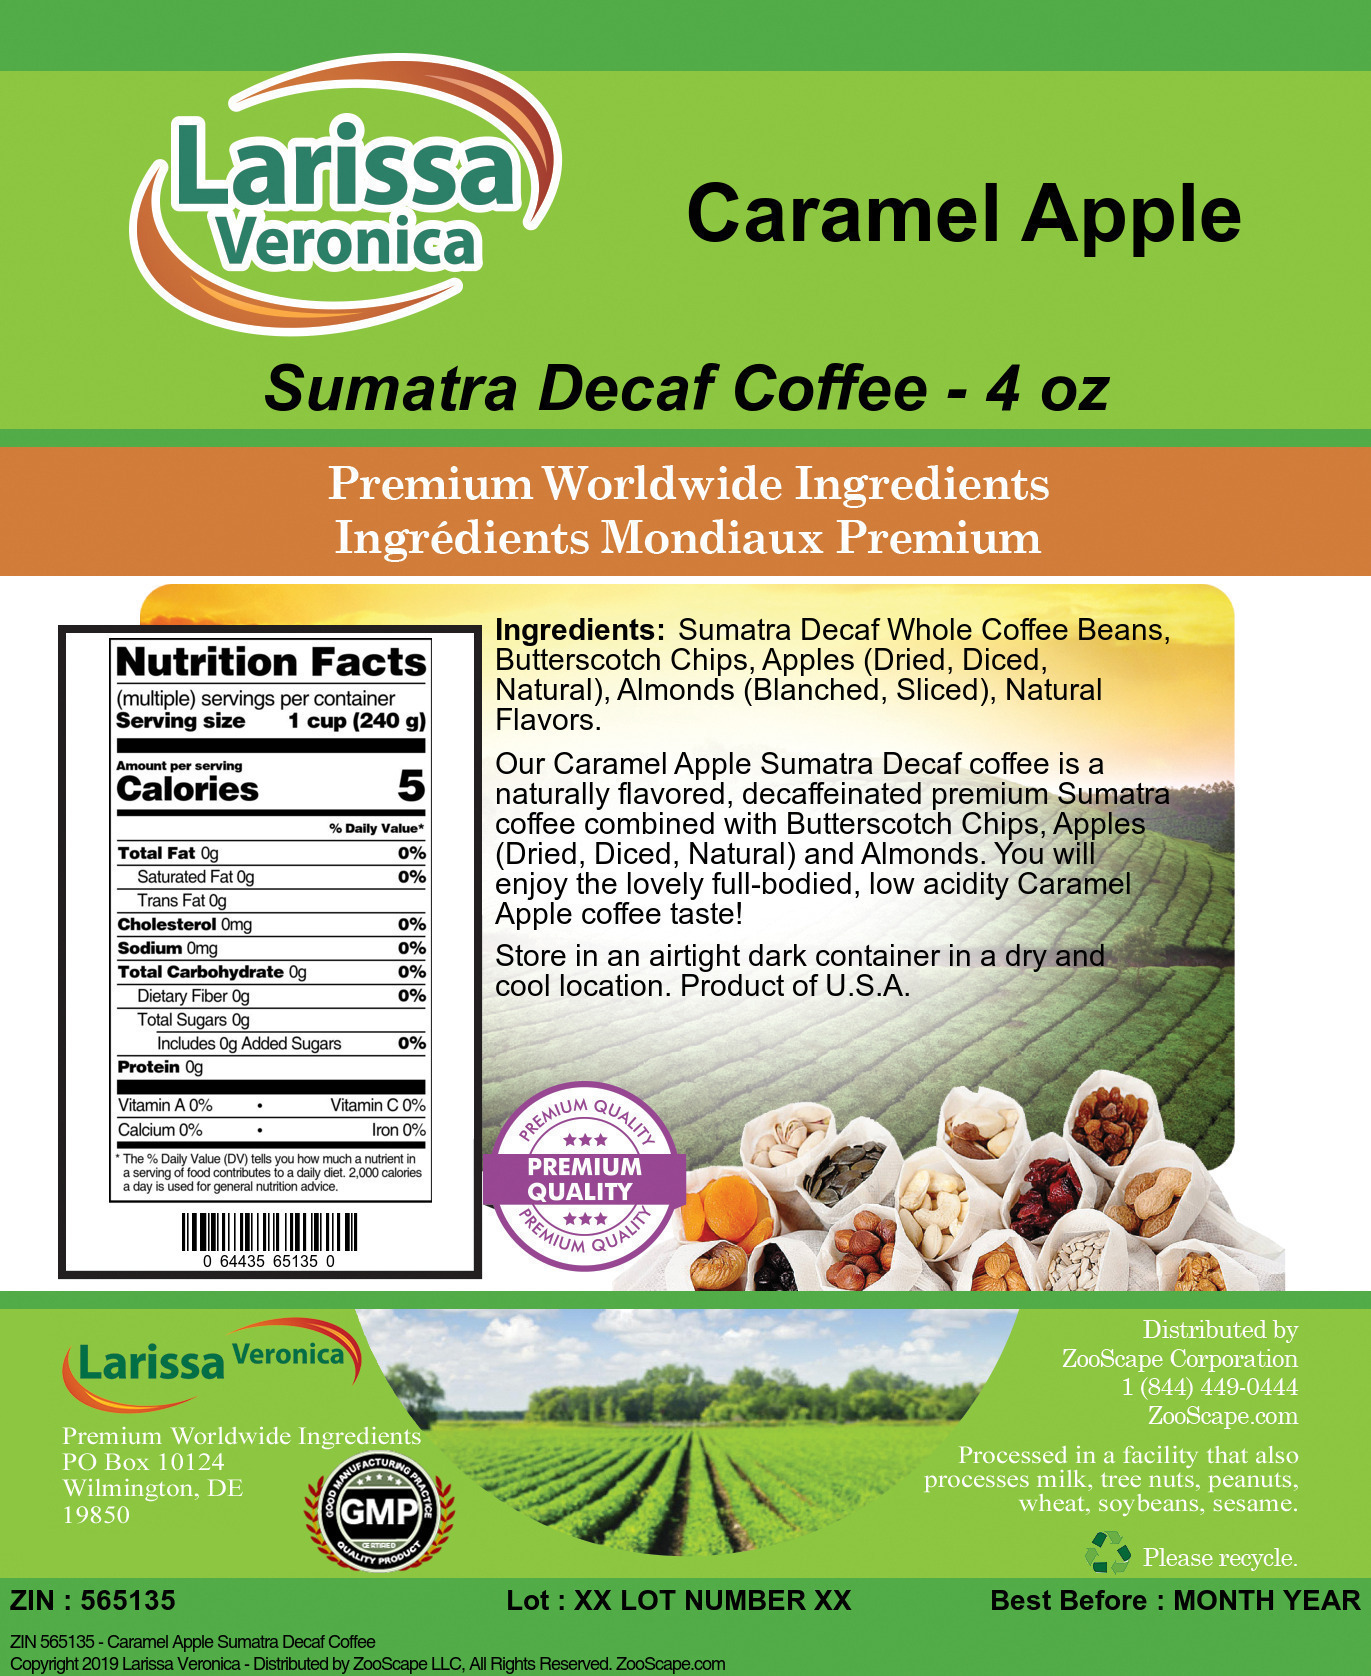 Caramel Apple Sumatra Decaf Coffee - Label